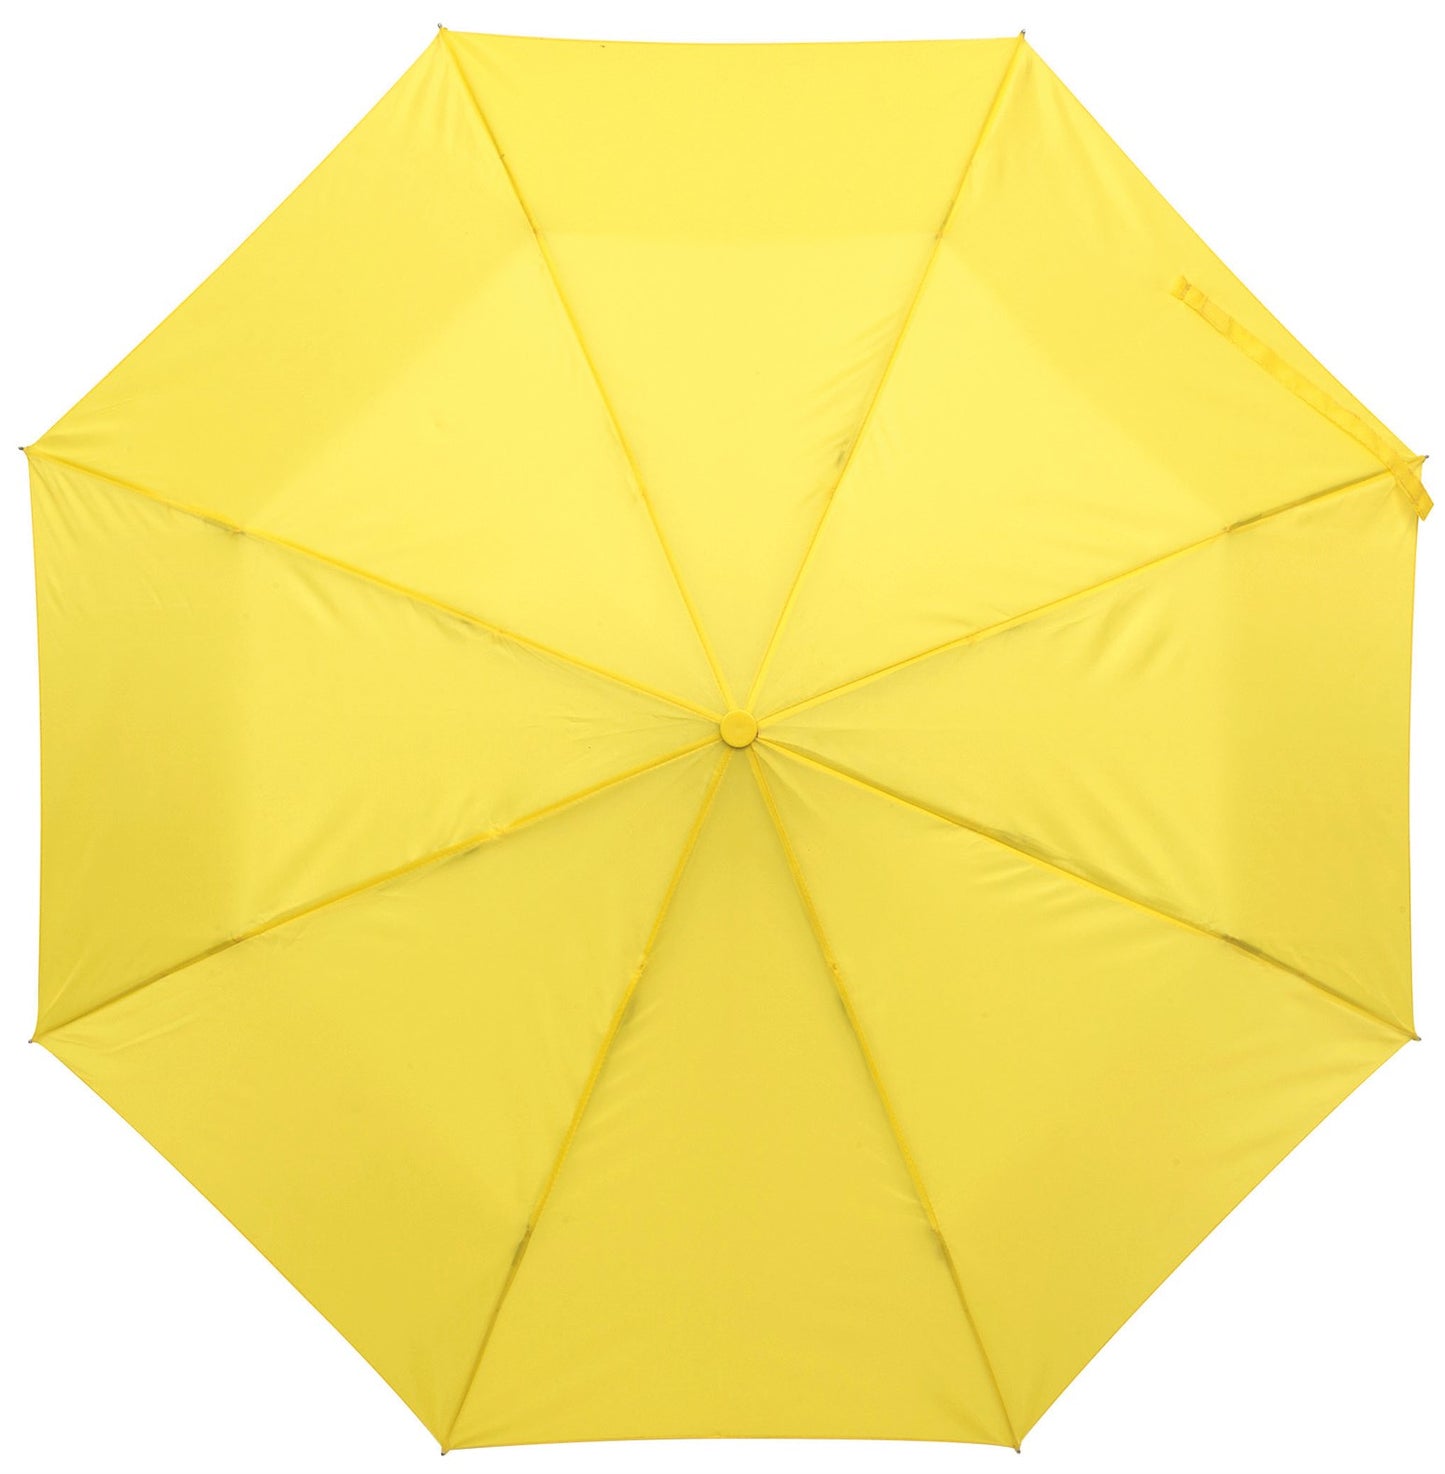 Κίτρινη ομπρέλα βροχής, αυτόματη, μίνι.